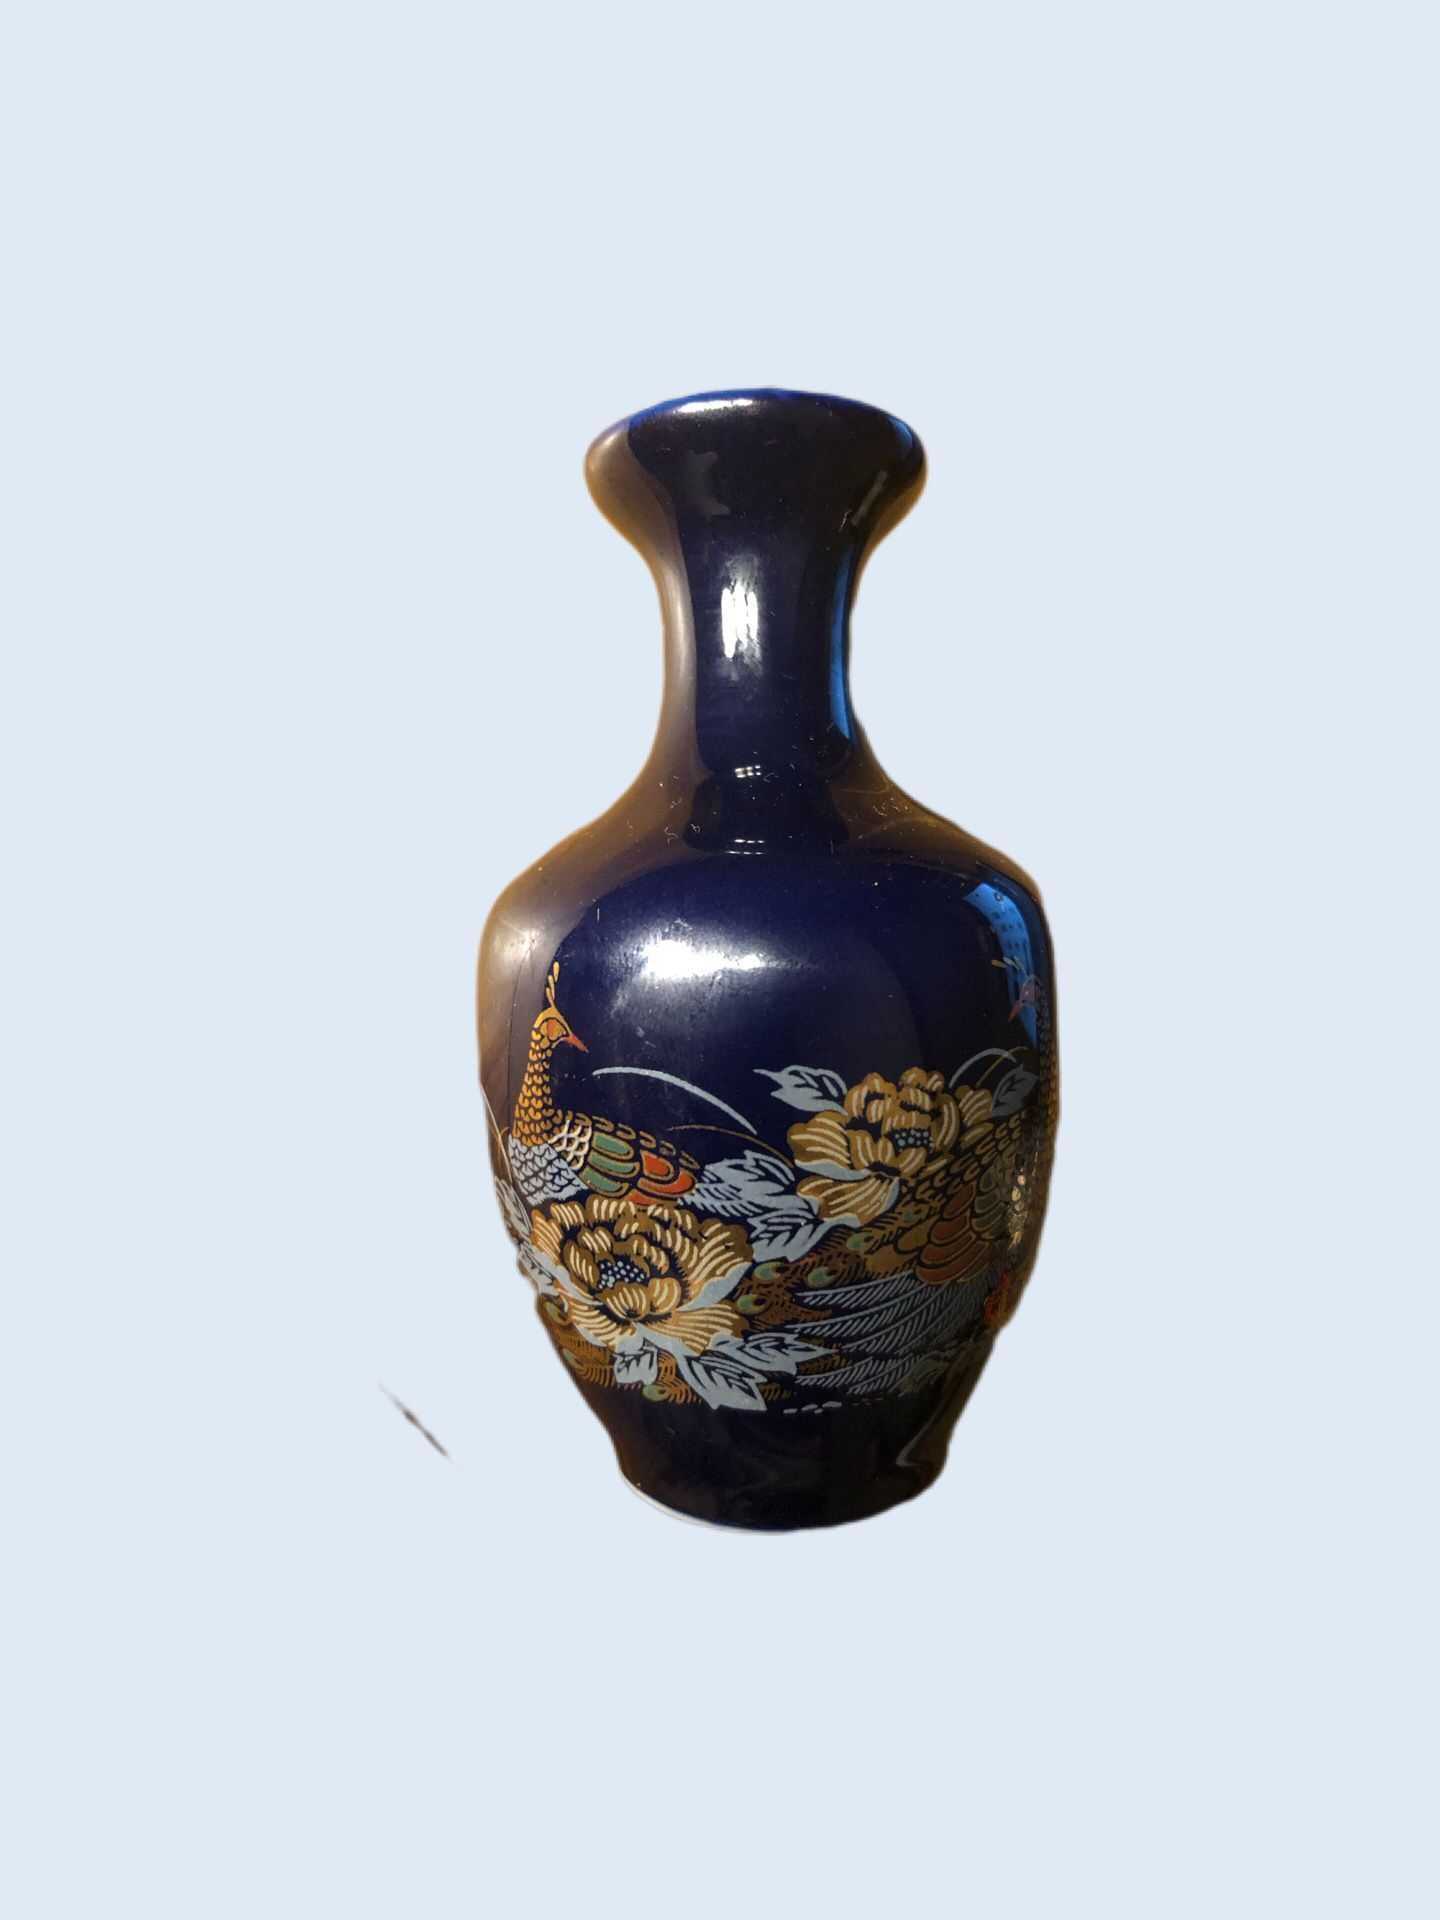 Jarra em Porcelana Azul com motivos florais e animais policromáticos